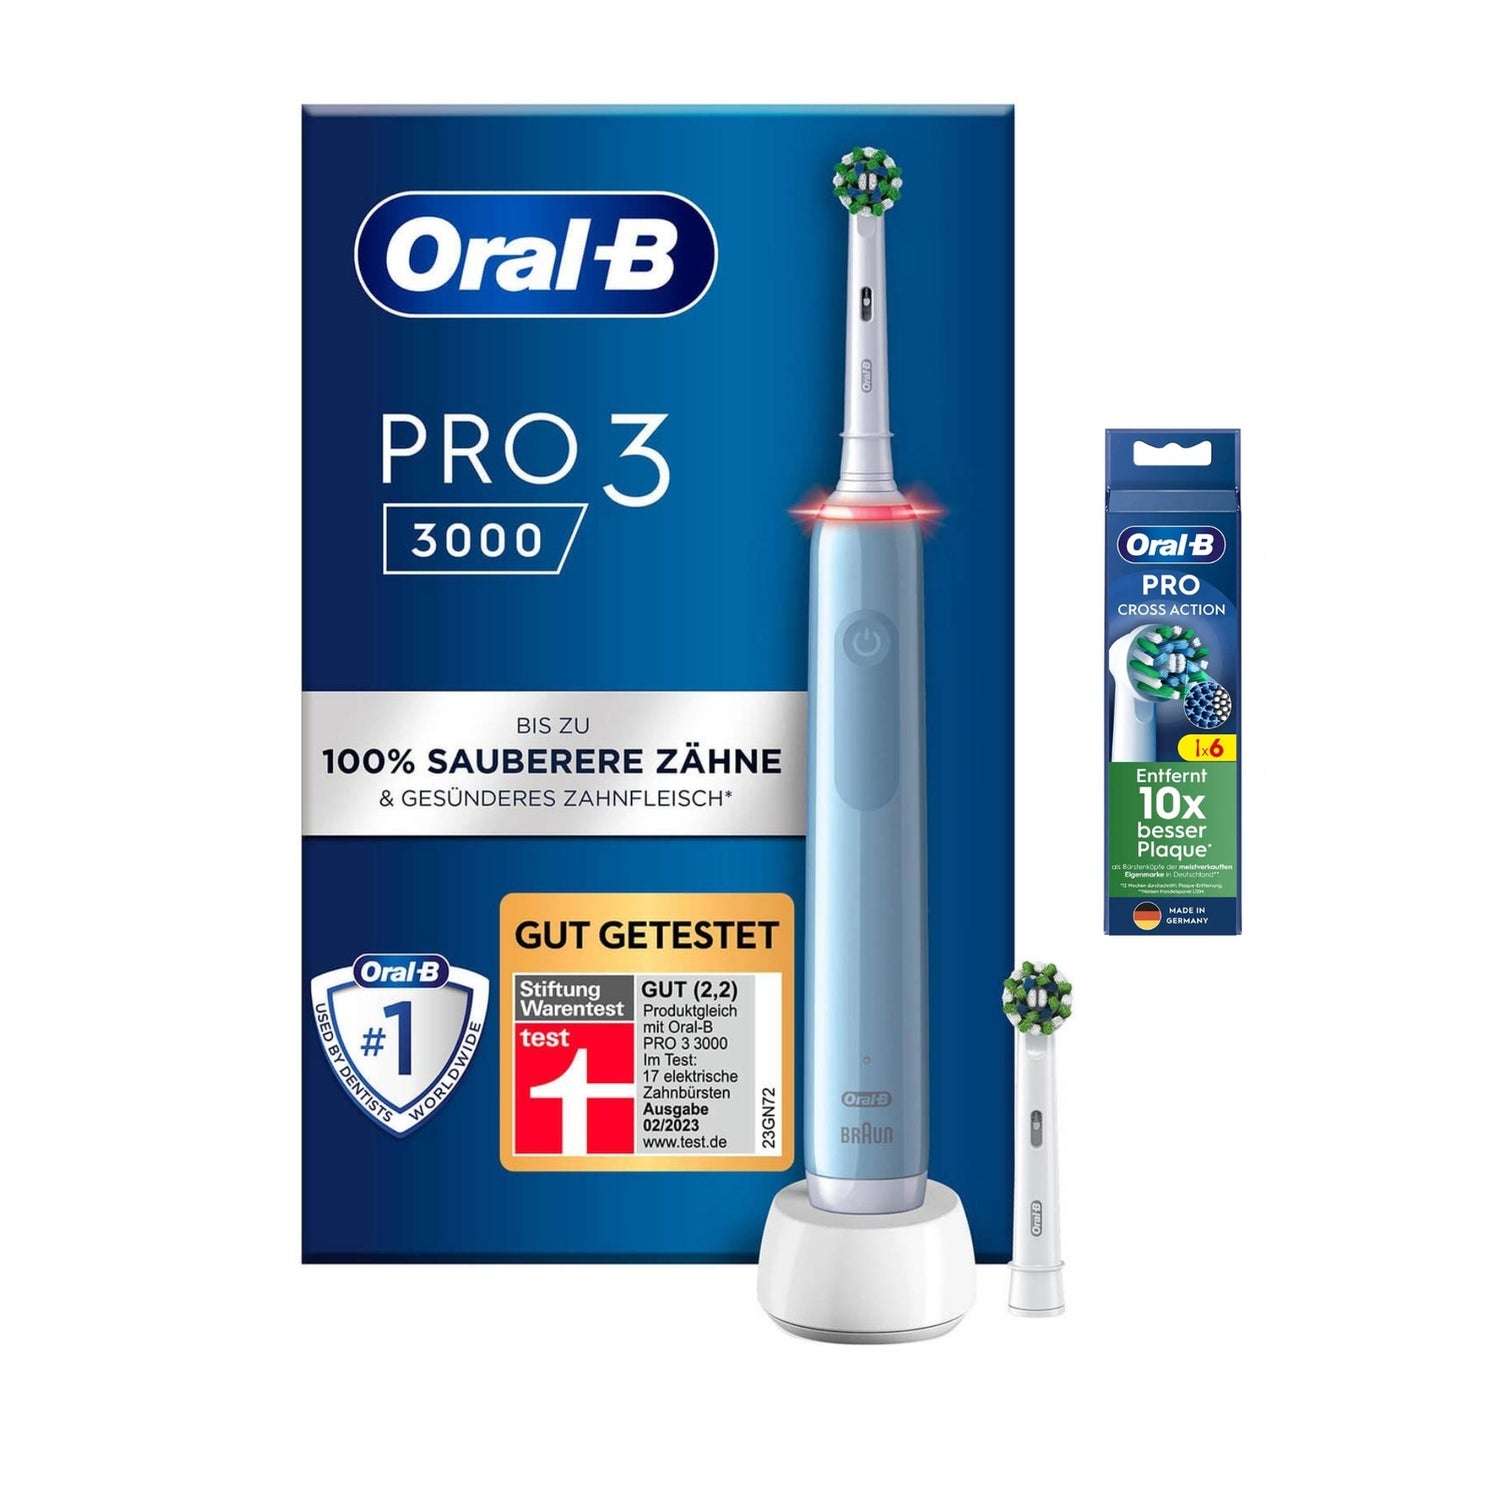 Oral-B Power Pro 3 3000 Cross Action Elektrische Zahnbürste, Blue